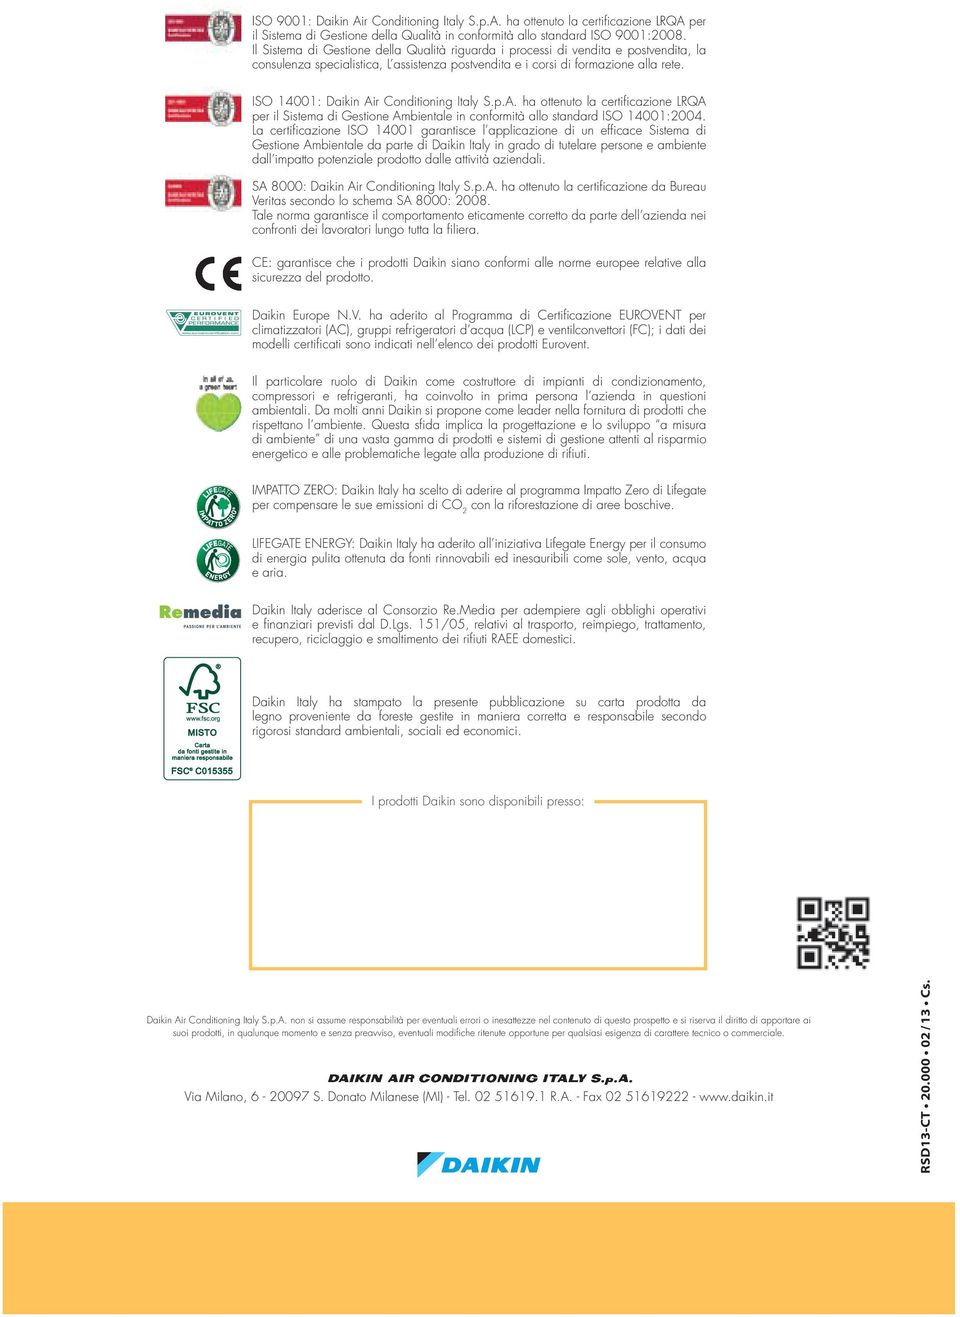 ISO 14001: Daikin Air Conditioning Italy S.p.A. ha ottenuto la certificazione LRQA per il Sistema di Gestione Ambientale in conformità allo standard ISO 14001:2004.